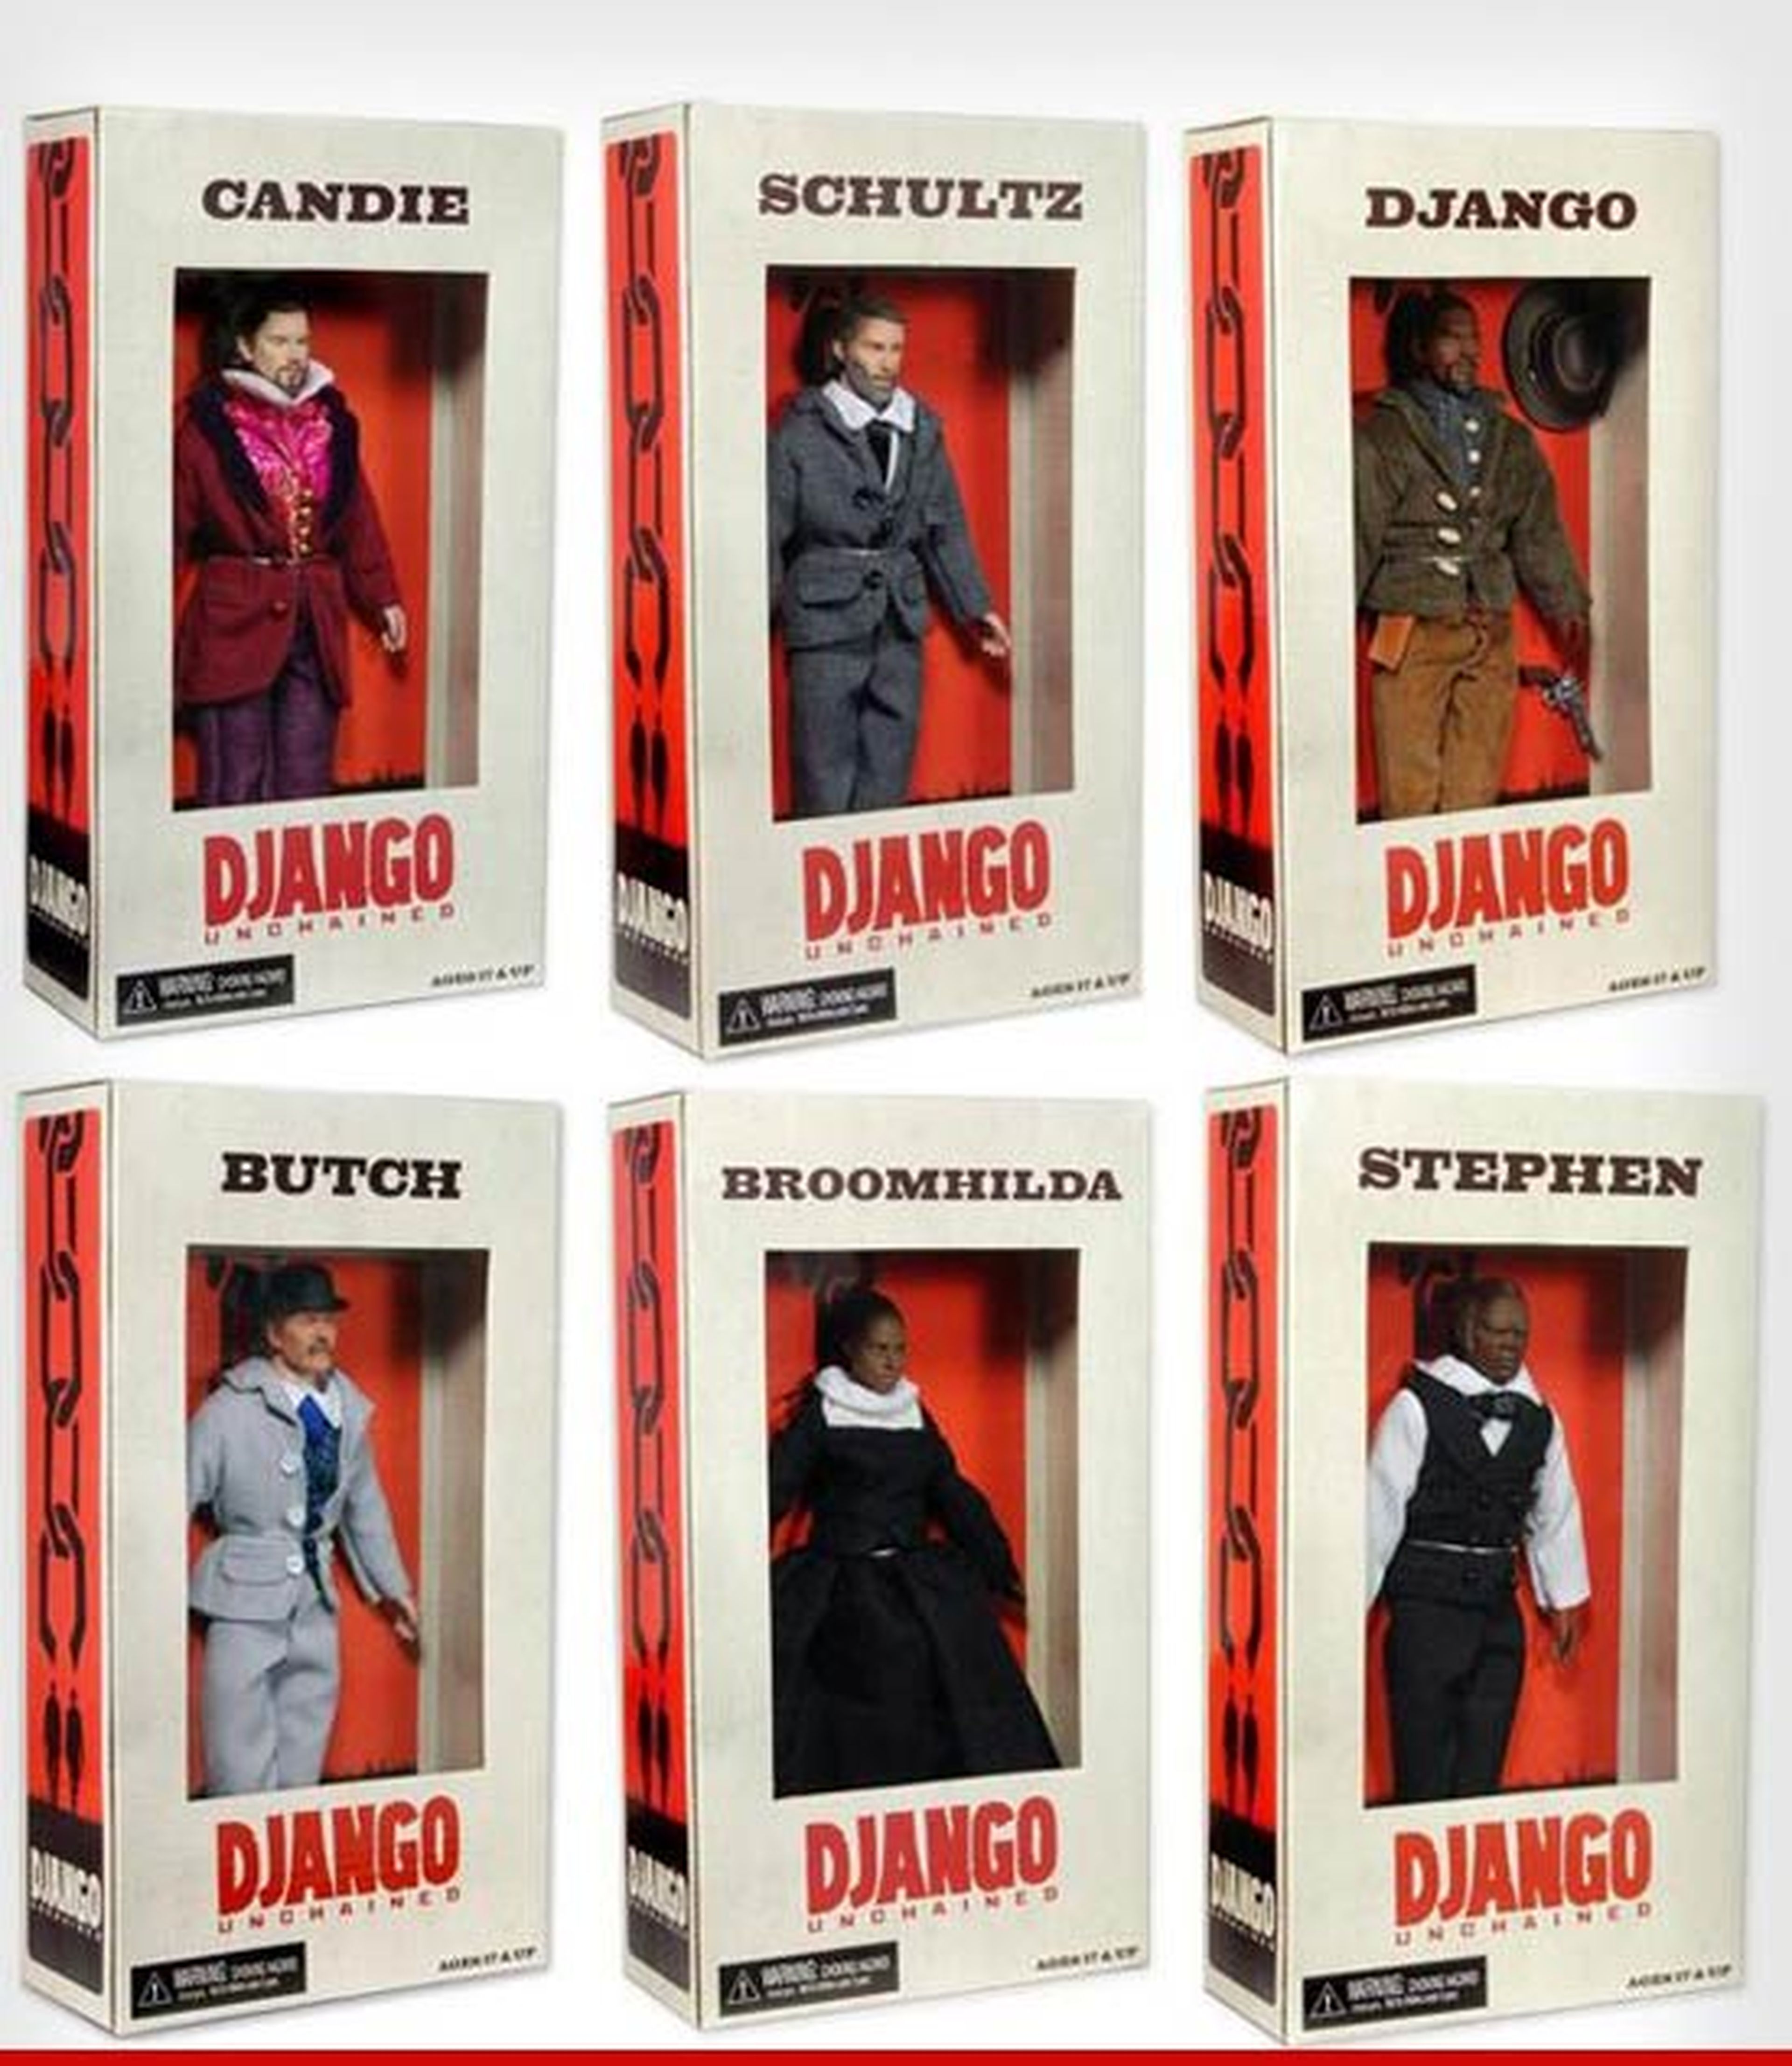 Cancelan los "juguetes" de Django Desencadenado